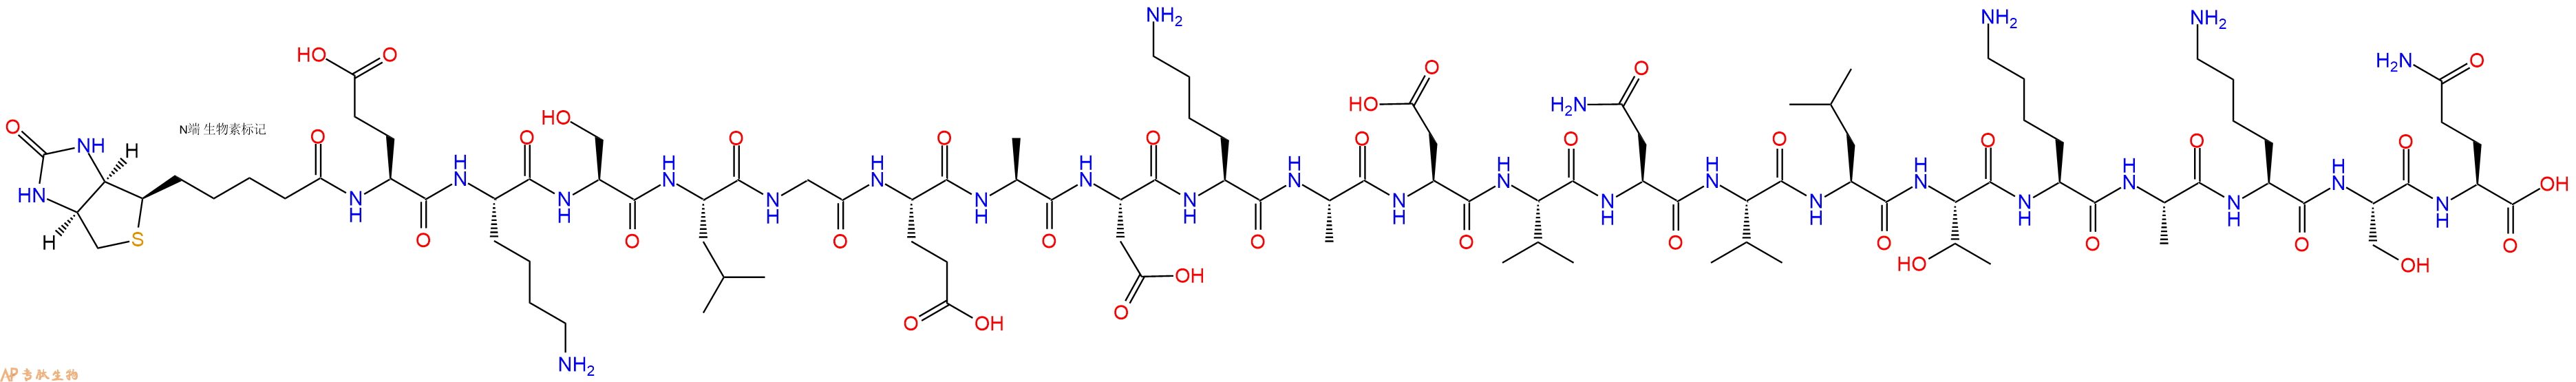 专肽生物产品生物素标记肽Biotin-EKSLGEADKADVNVLTKAKSQ198342-22-2